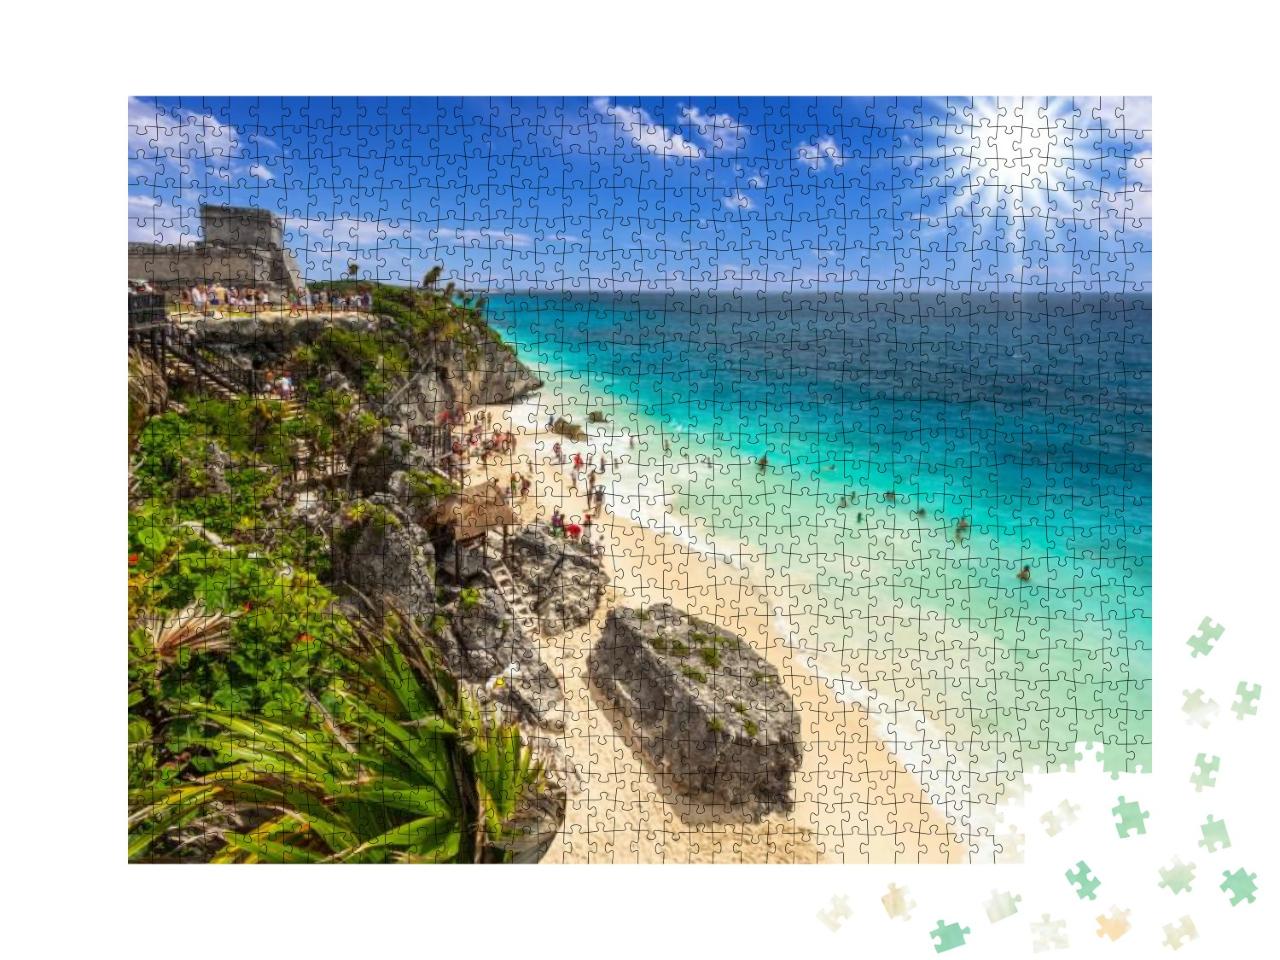 Puzzle 1000 Teile „Wunderschöner Strand von Tulum am Karibischen Meer, Mexiko“